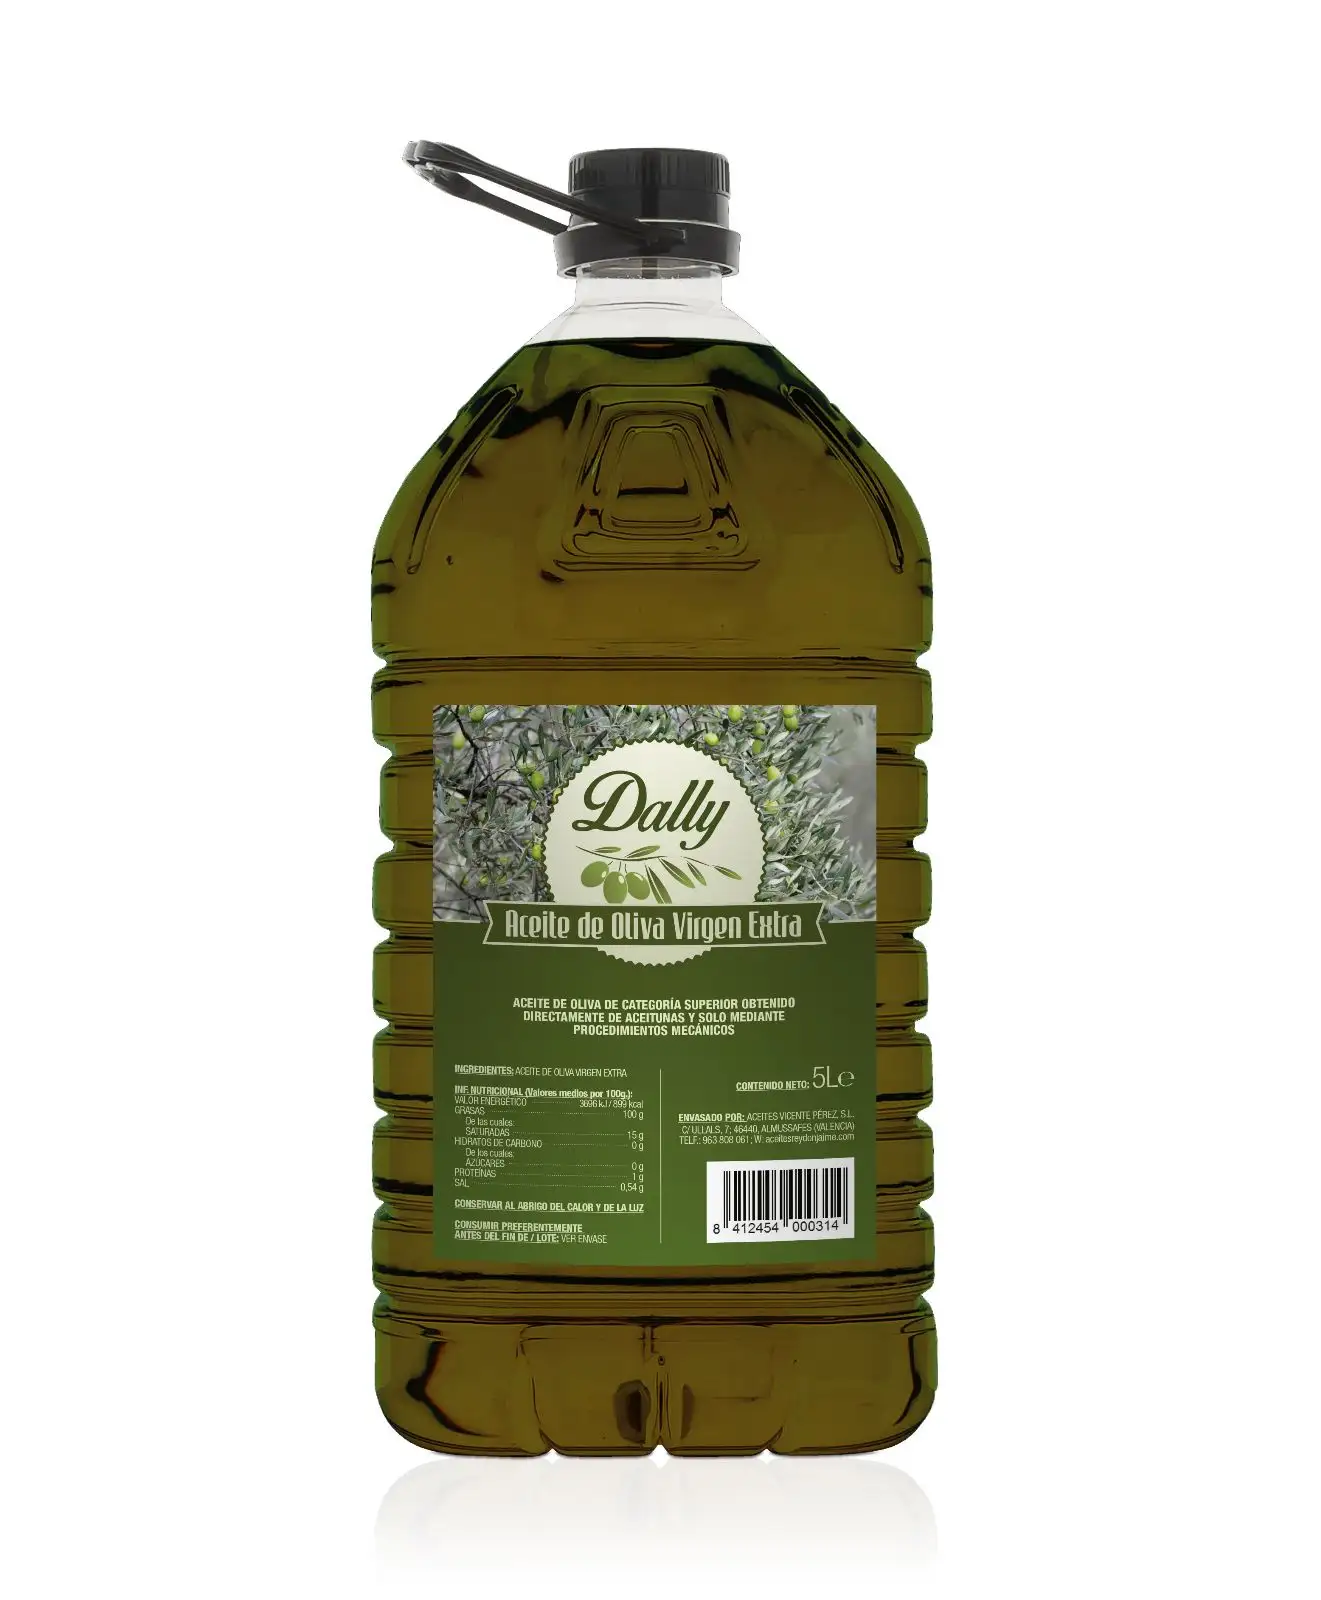 Eccezionale olio extra vergine di oliva spremuto a freddo dalla spagna per cucinare e condire imballaggi per animali domestici di grande formato